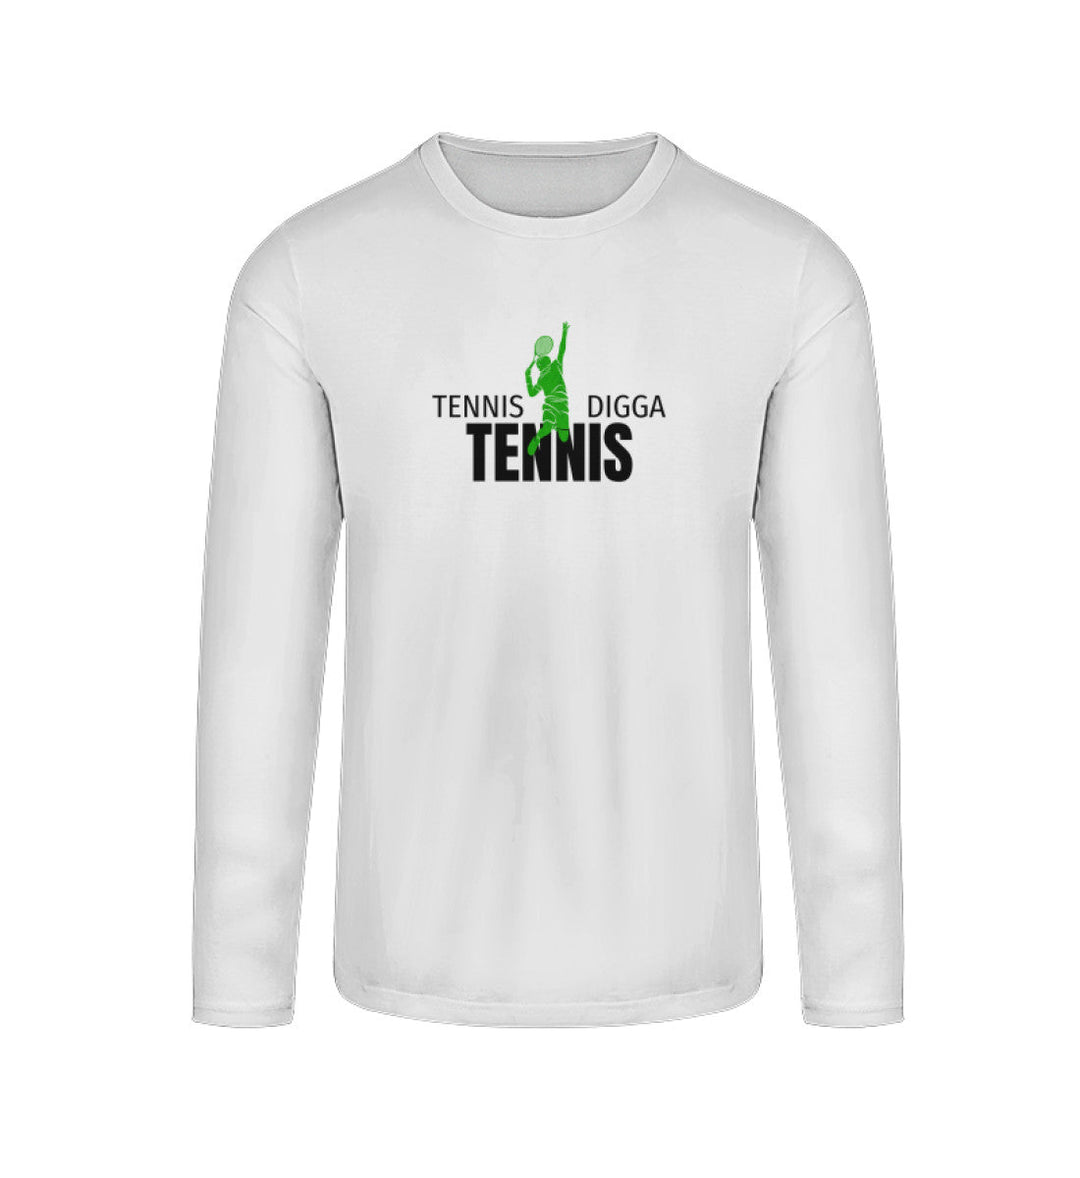 Tennis - Digga | Longsleeve Unisex - Matchpoint24 - Kleidung für Tennisfans